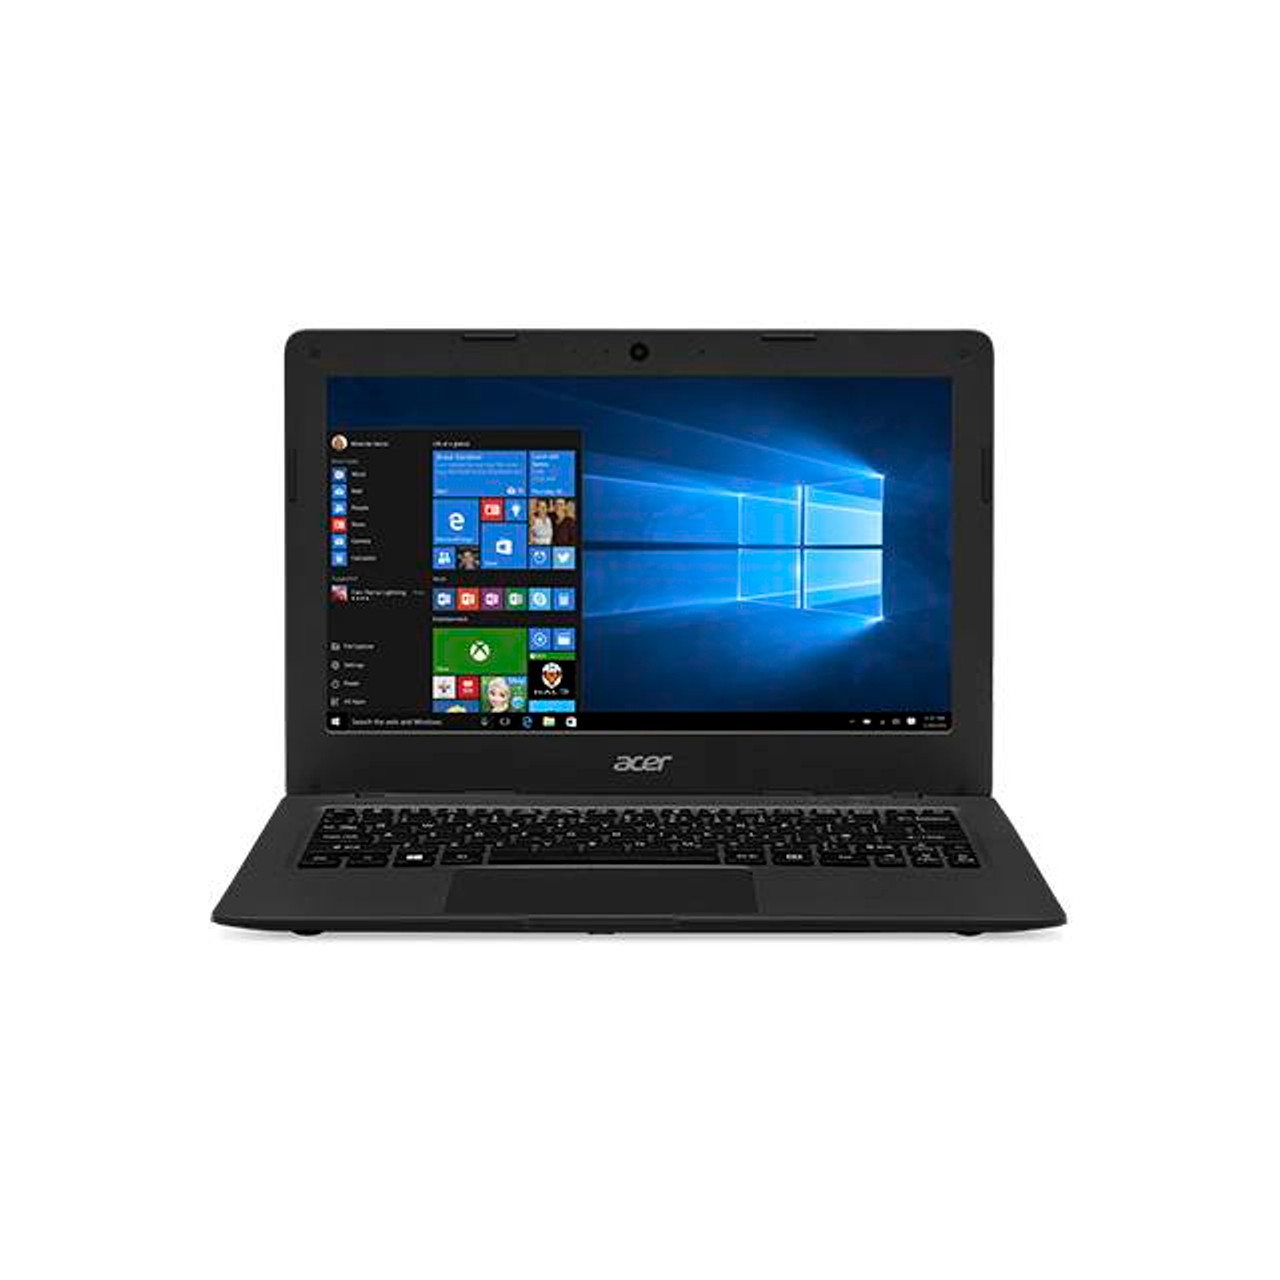 Acer Aspire One Cloudbook AO1-131M-C1T4 11.6 inch Intel Celeron N3050 1.6GHz/ 2GB DDR3L/ 32GB eMMC/ USB3.0/ Windows 10 Pro Netbook (Dark Gray)